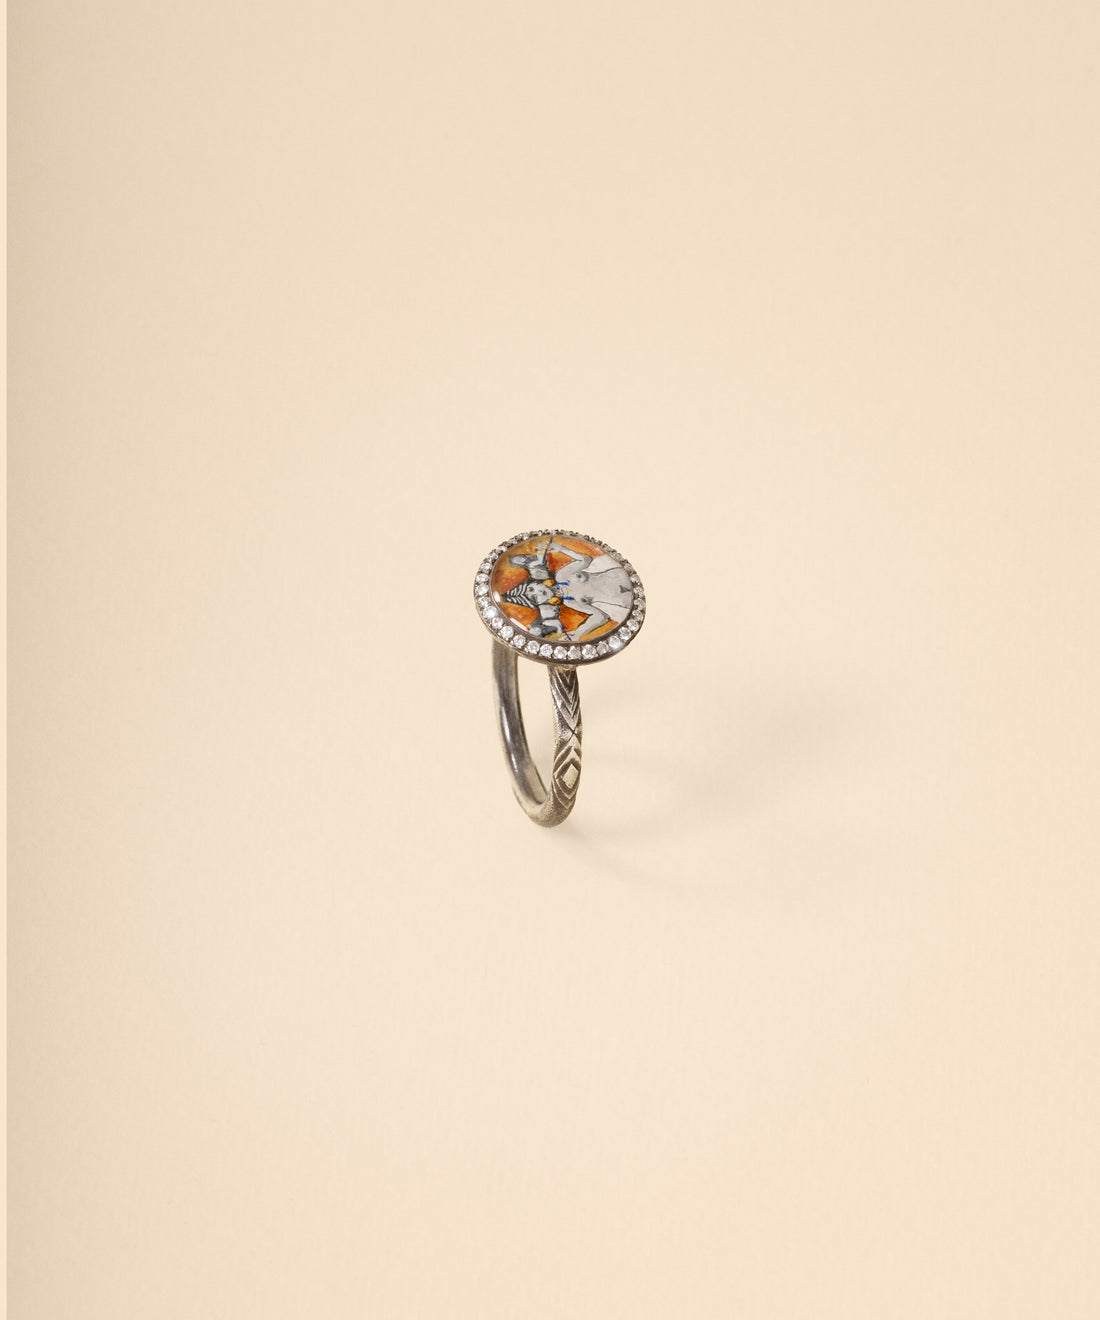 Inanna Mosaic Diamond Ring